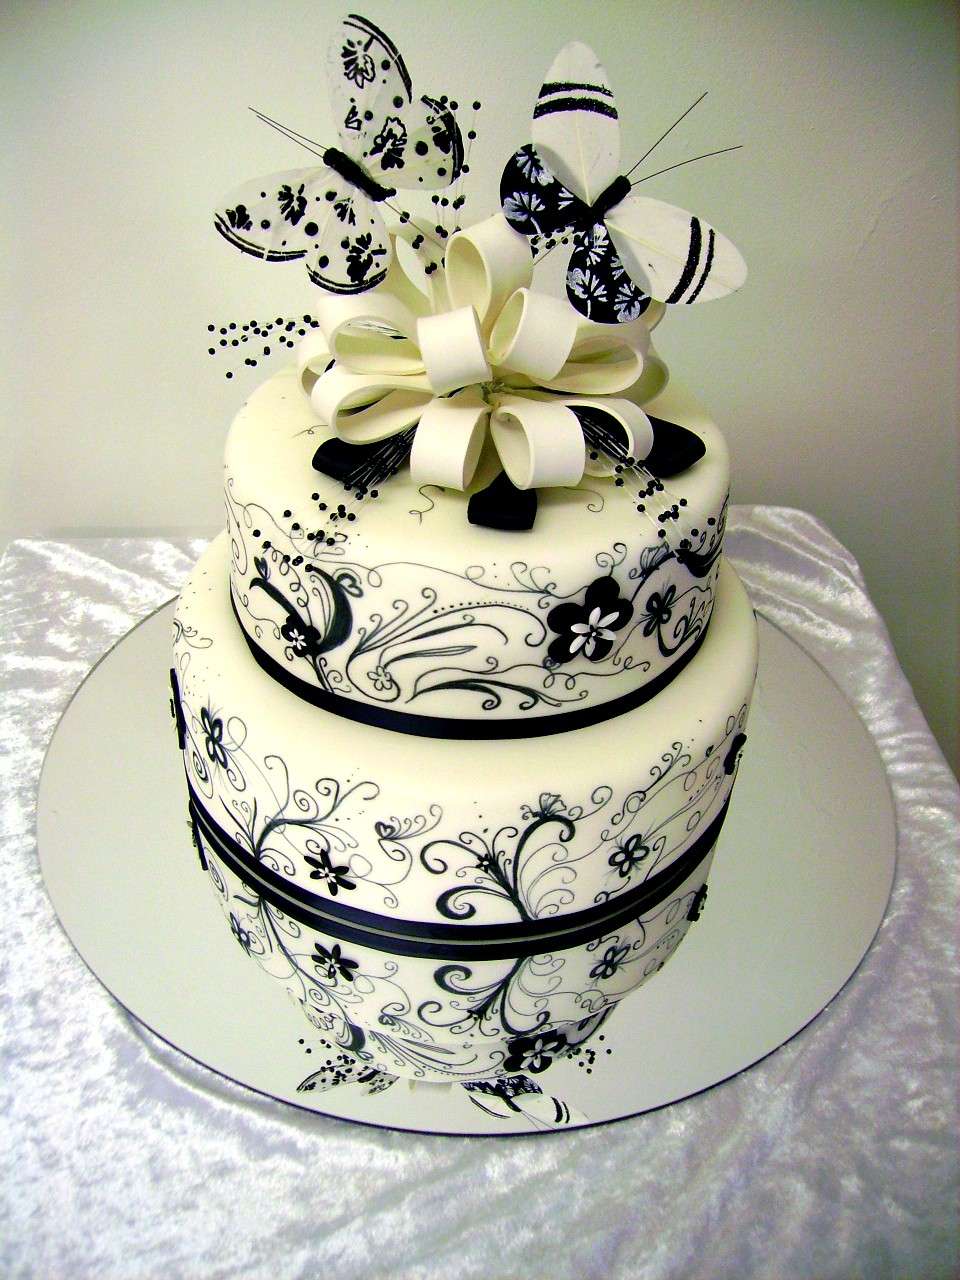 Decorazioni torte nuziali: tante idee per il tuo matrimonio [FOTO]